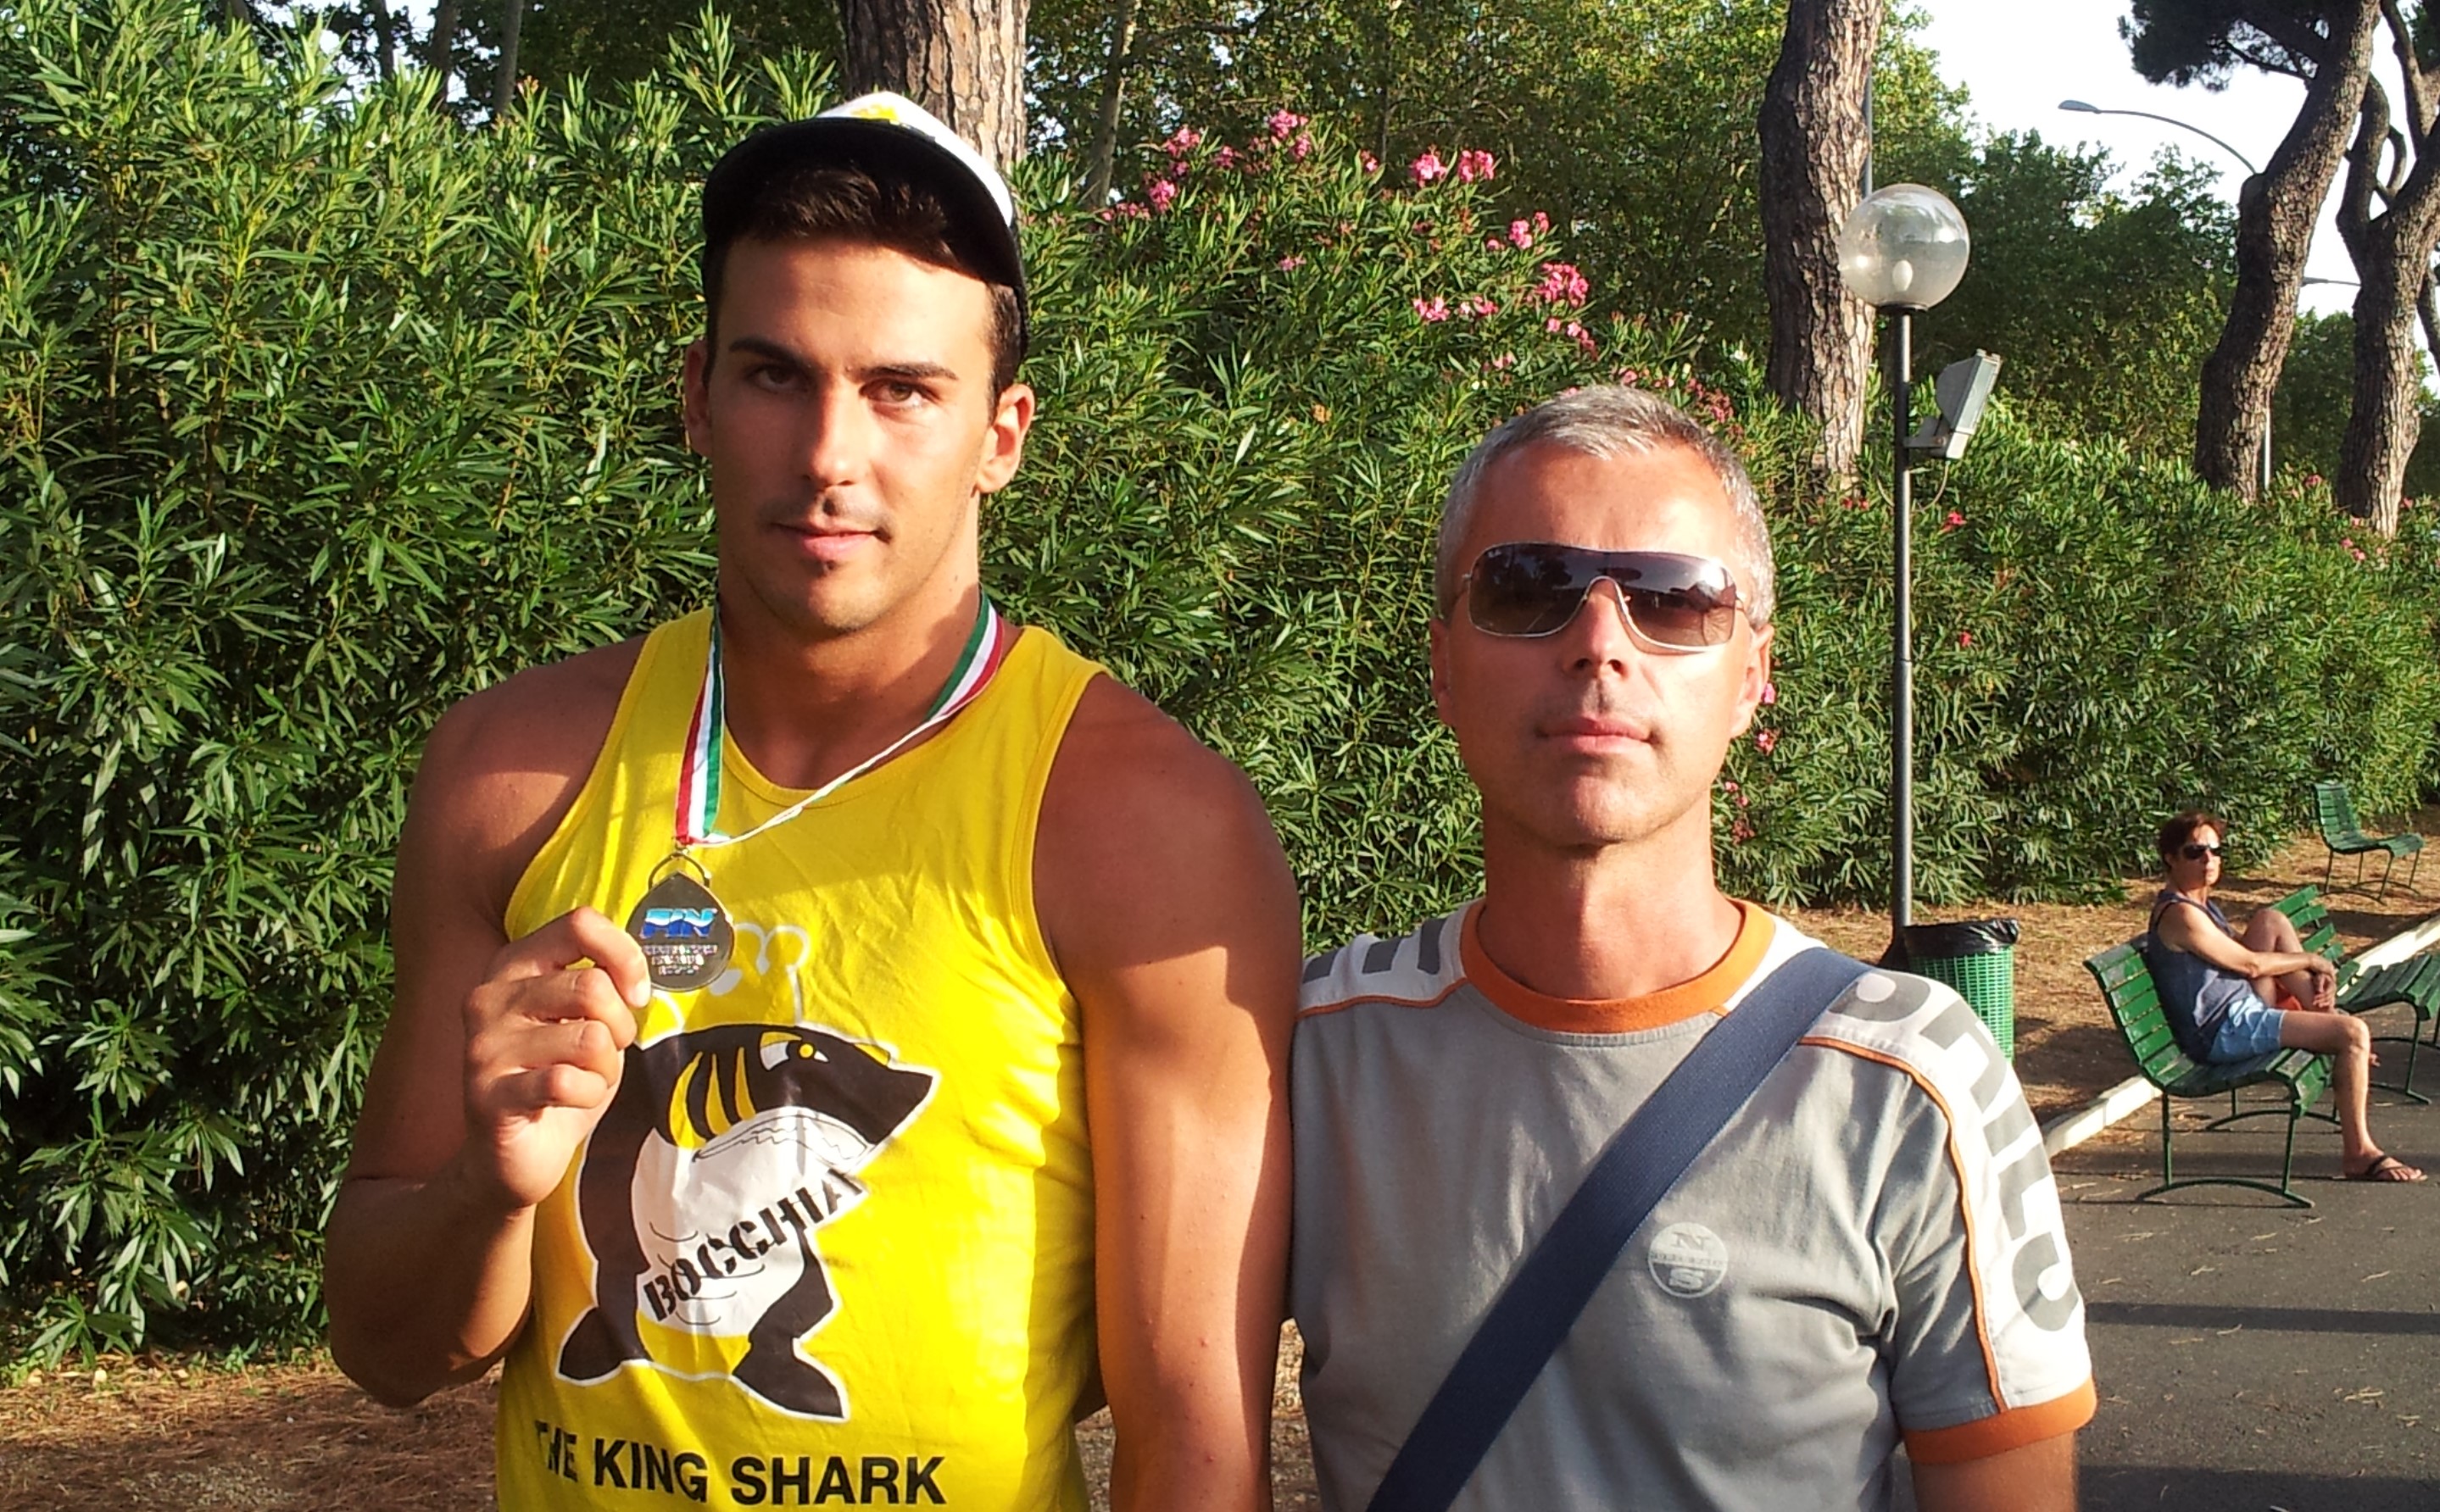 Scopri di più sull'articolo The King Shark: parla Andrea Avanzini, l’allenatore della società Nuoto Club 91 Parma nella quale Federico Bocchia è cresciuto.